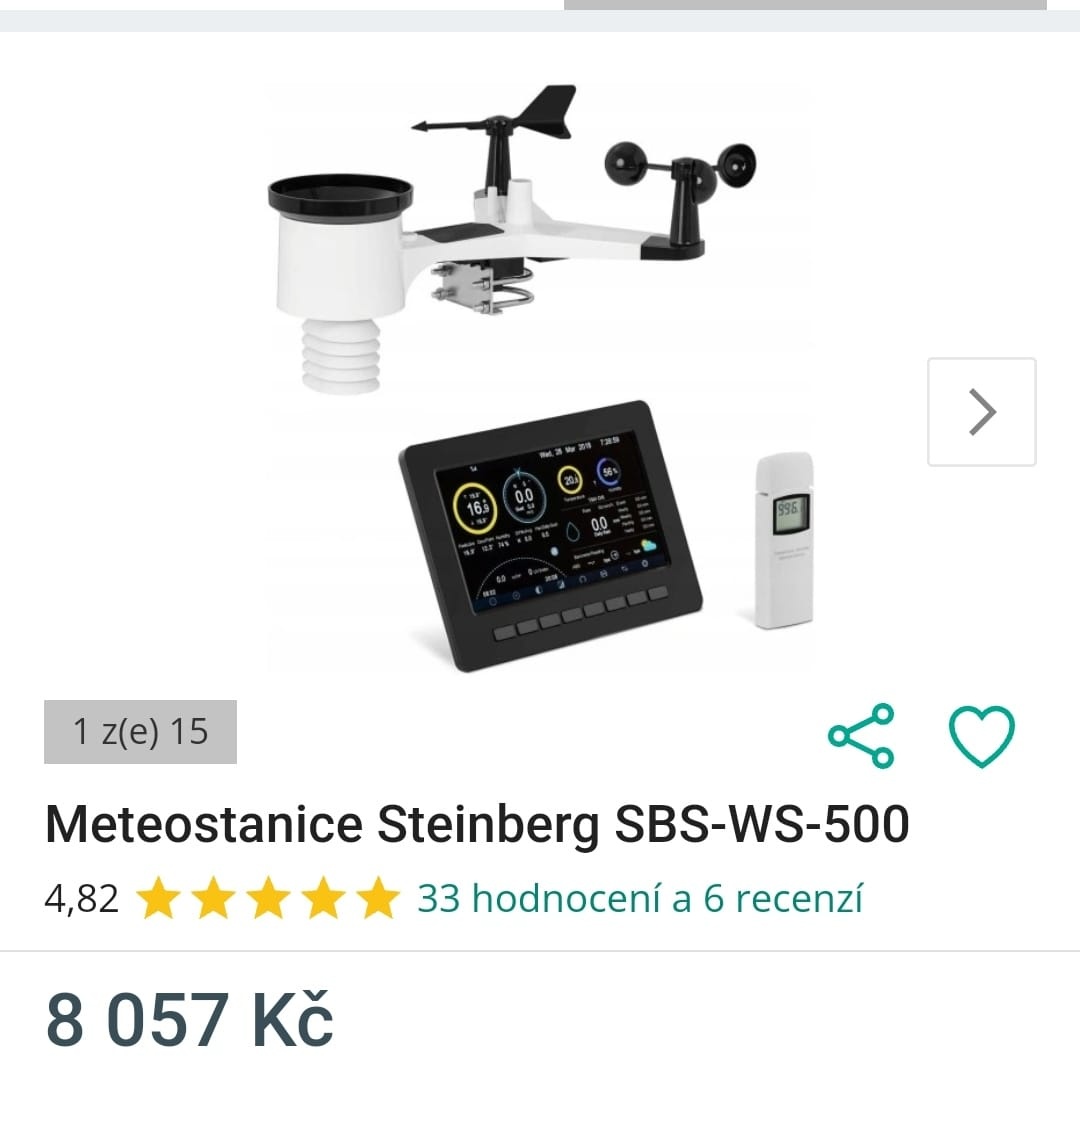 Meteostanice Steinberg SBS-WS-500